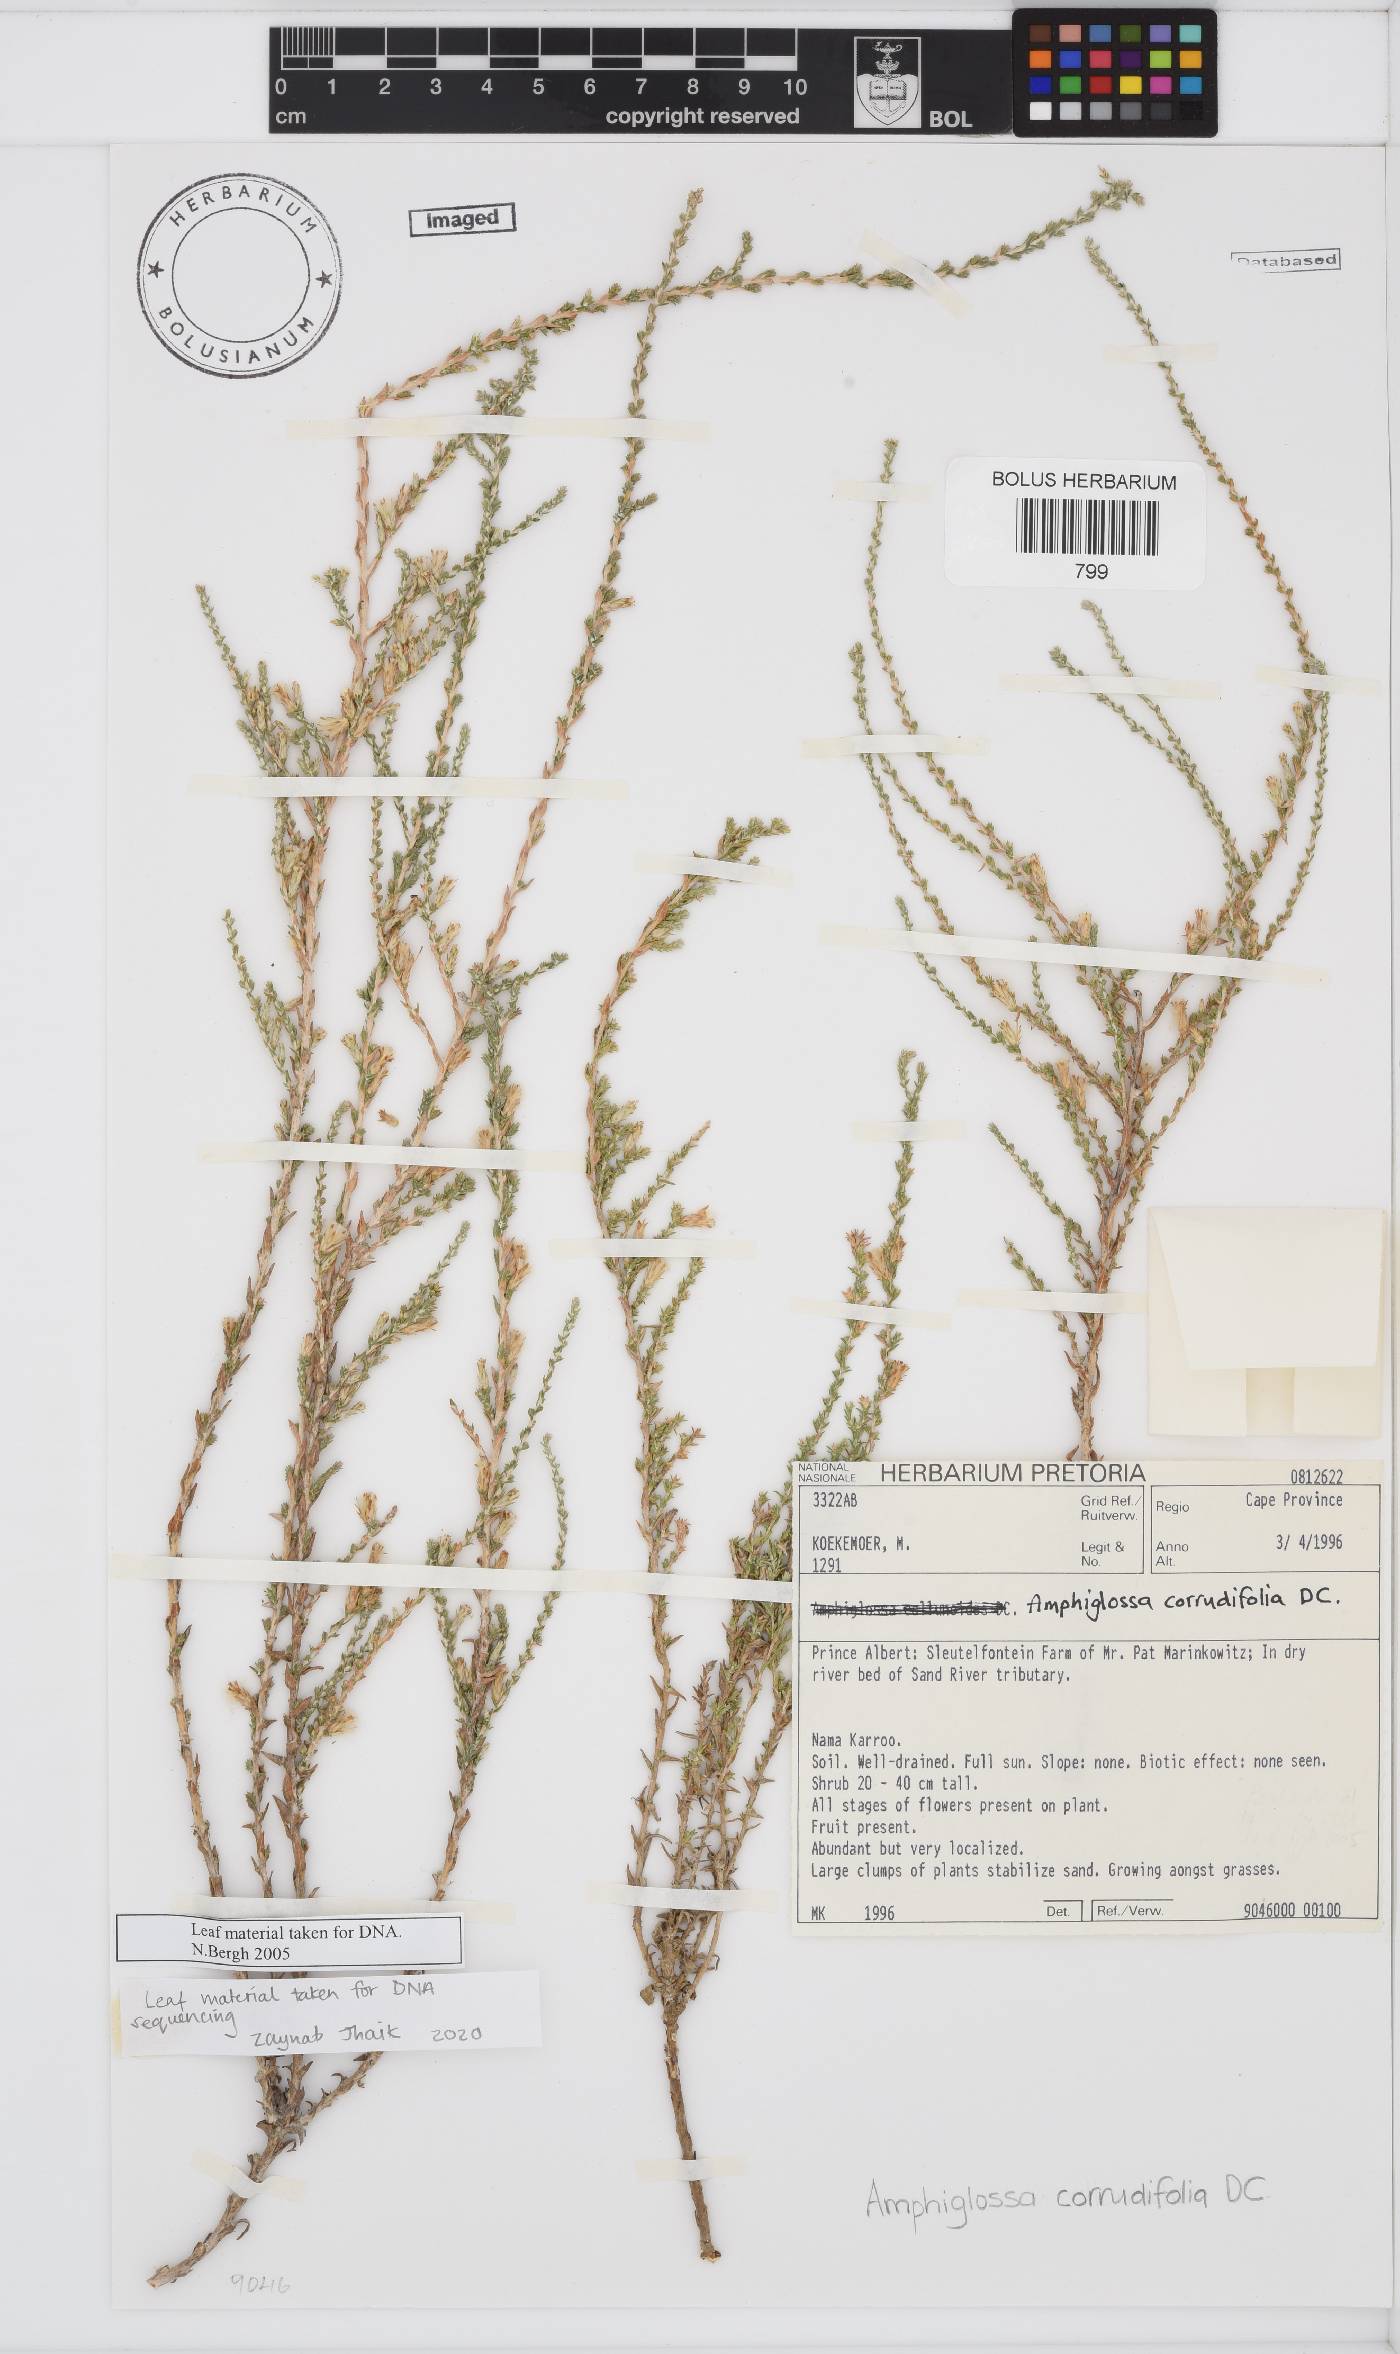 Amphiglossa corrudifolia image